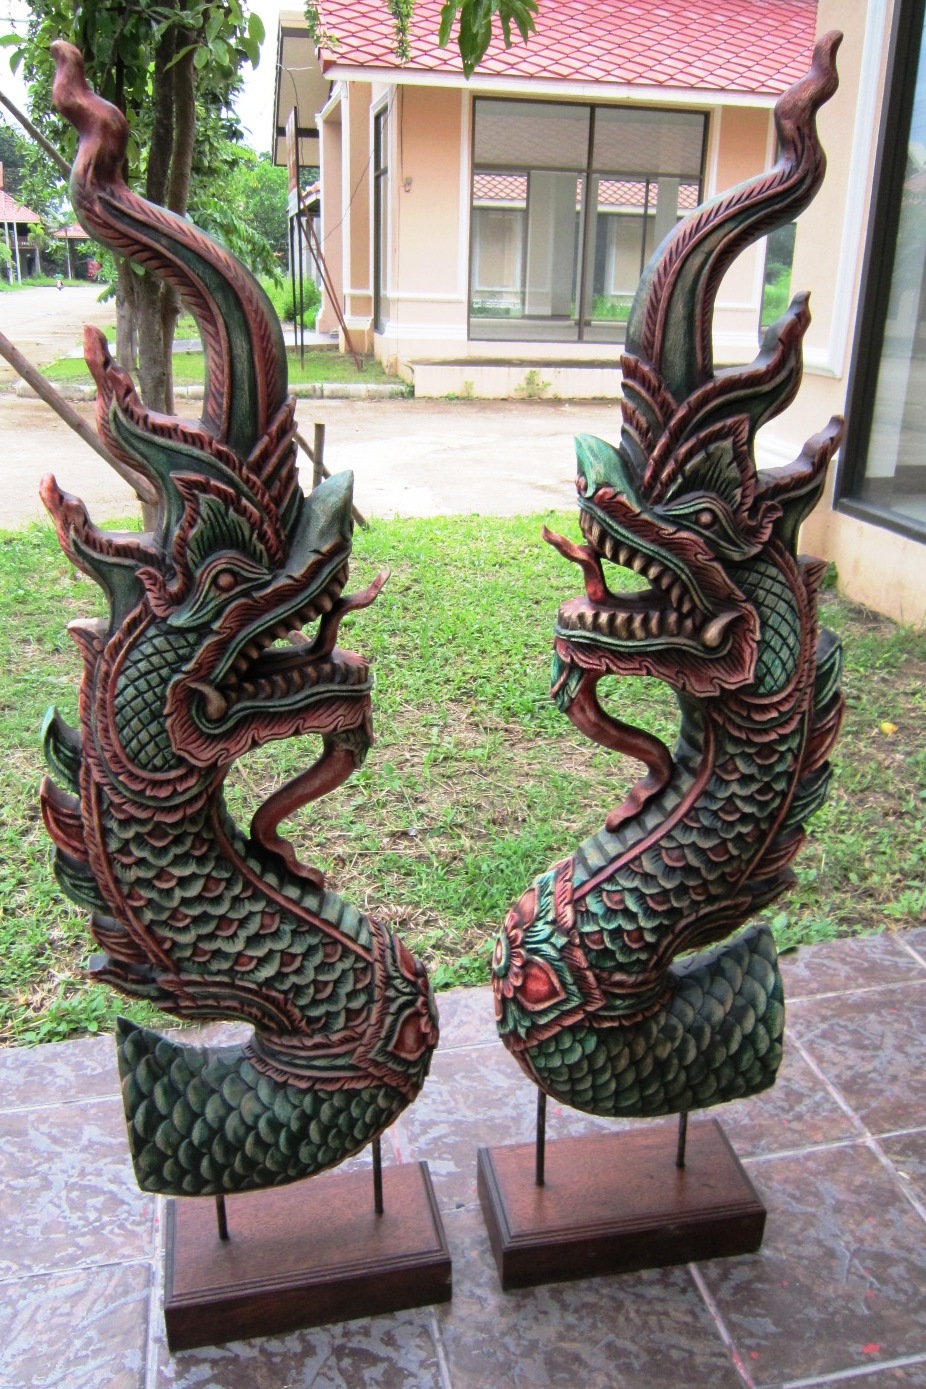 Pair of Naga Heads